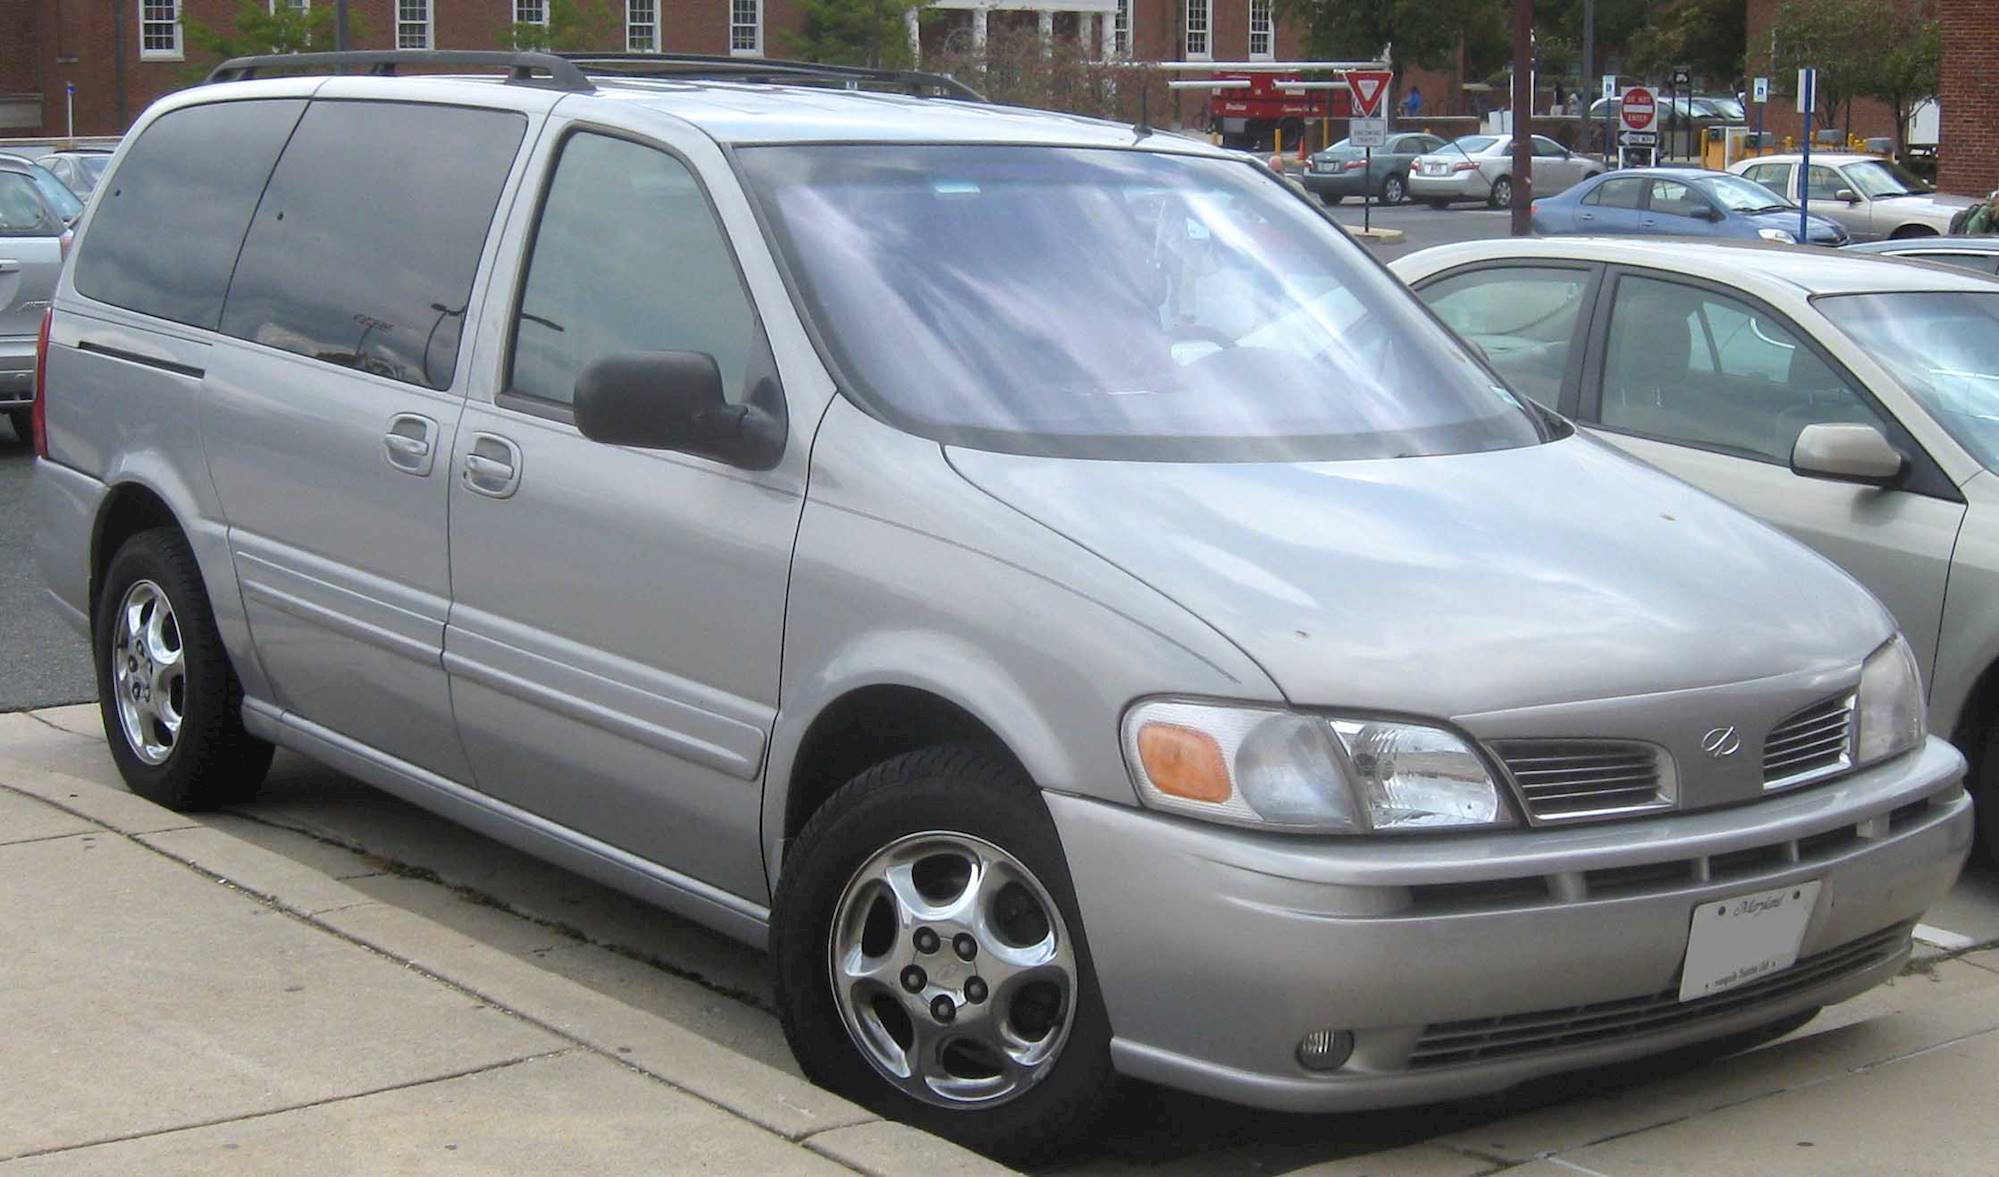 2002 Chevrolet Venture LS - Passenger Minivan 3.4L V6 auto